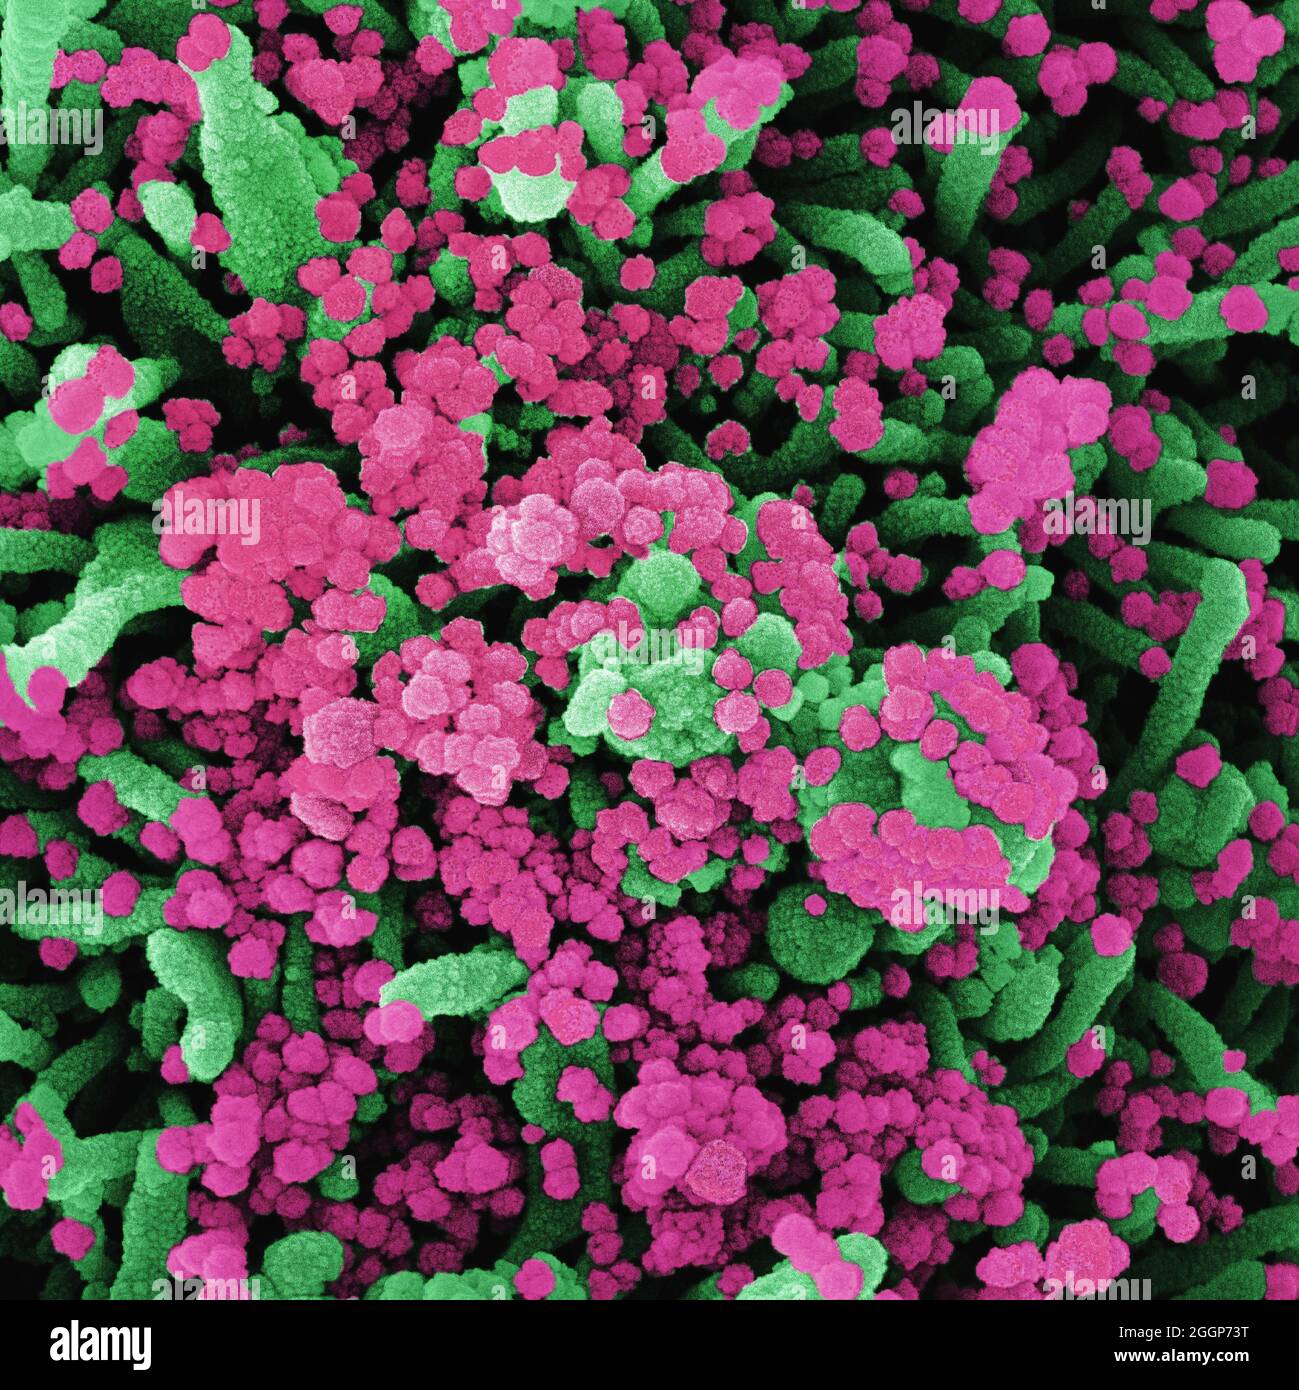 Micrografia elettronica a scansione di una cellula fortemente infettata da particelle di virus SARS-COV-2 (rosa), isolate da un campione di paziente. Foto Stock